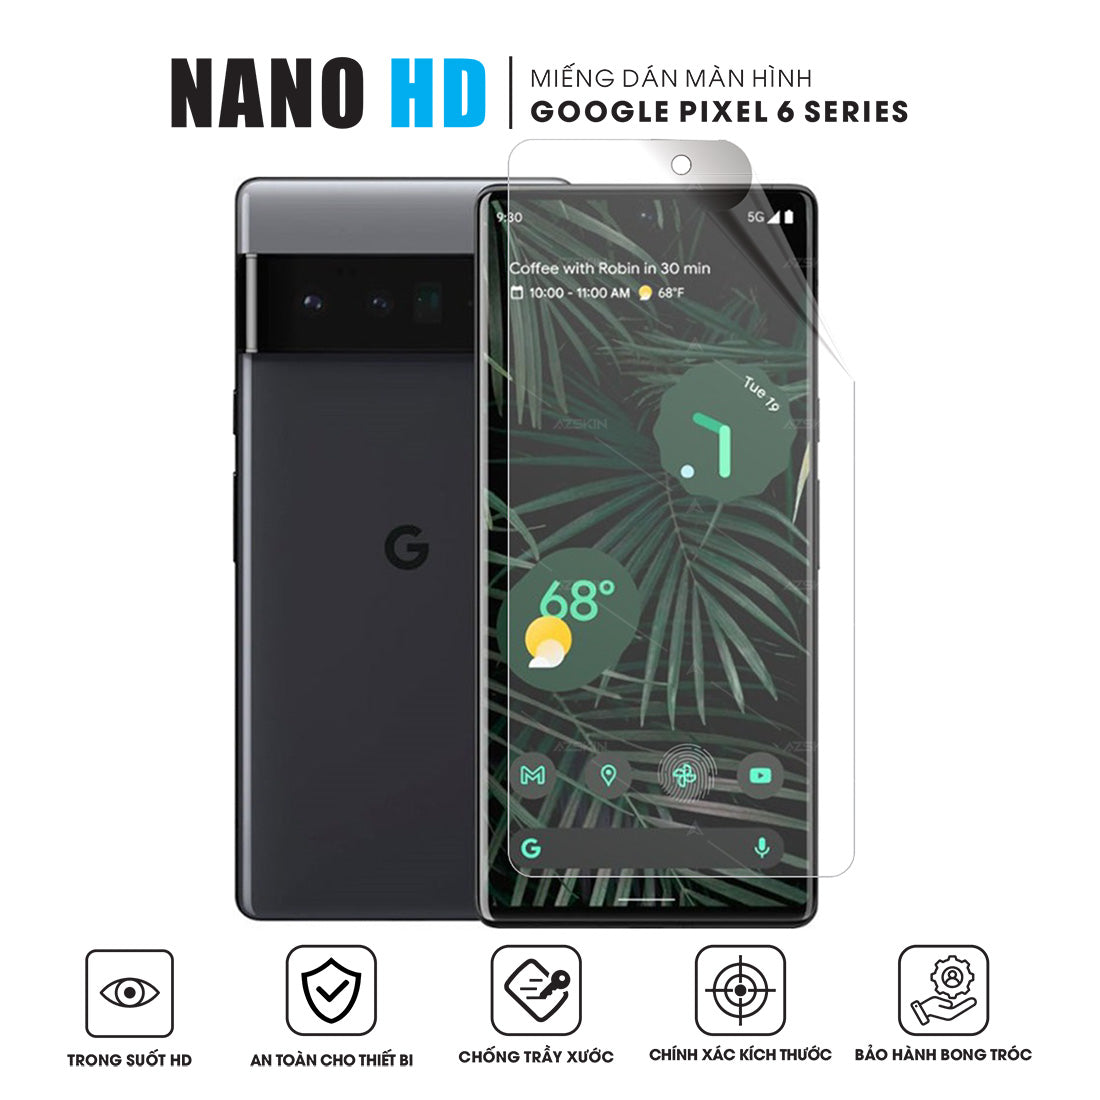 Miếng dán màn hình Nano HD trong suốt Pixel 6 Pro